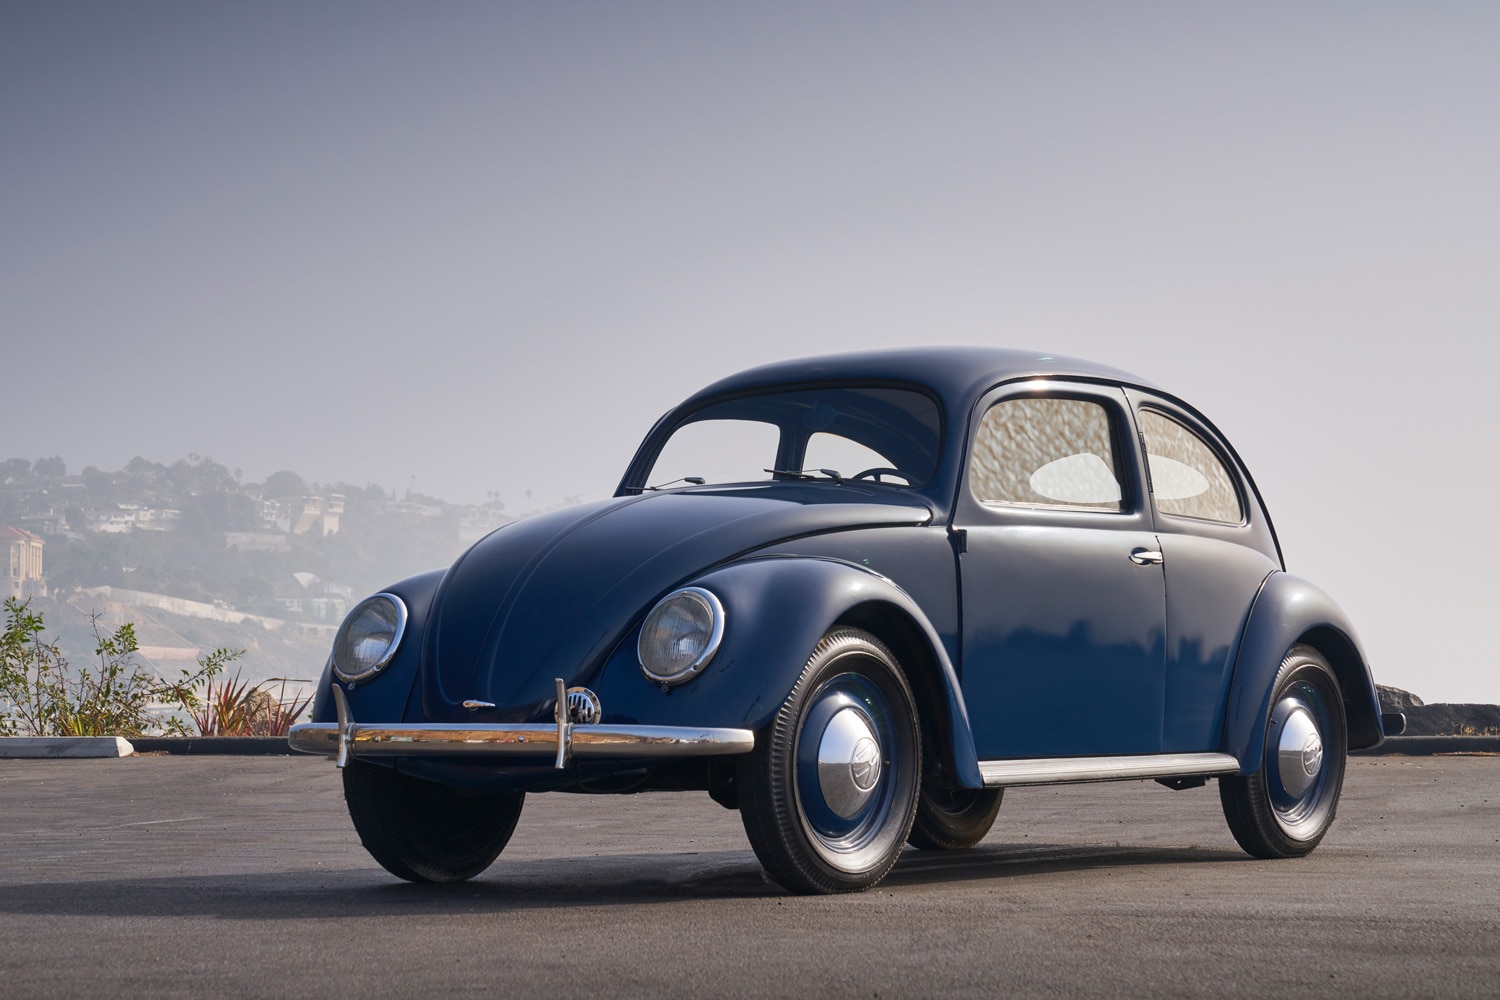 A blue 1949 Volkswagen Beetle